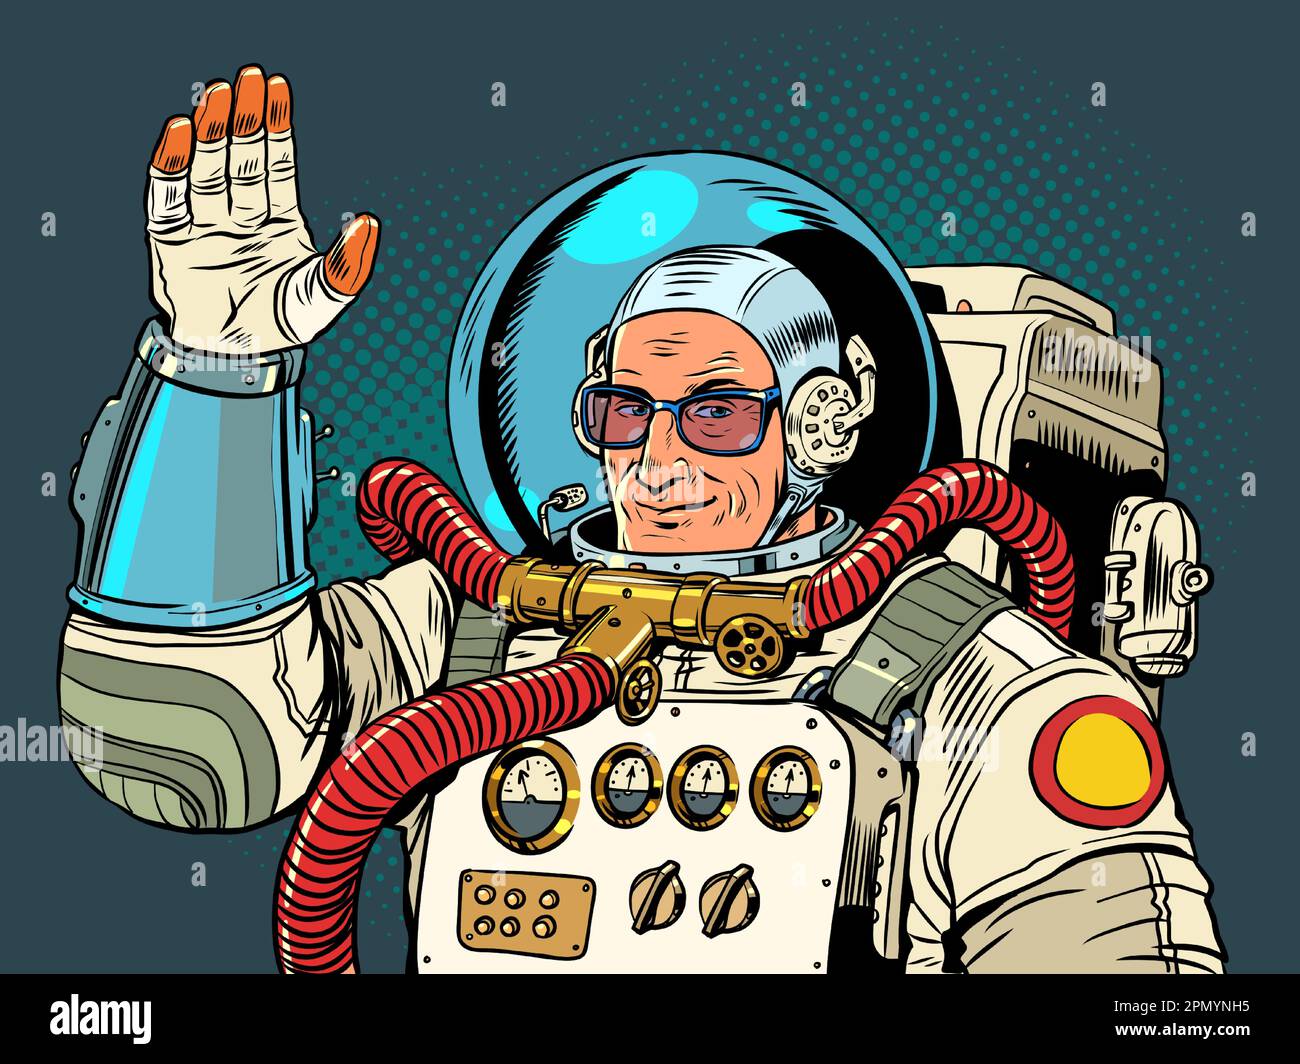 Hallo aus dem All. Der Astronaut mit Brille lächelt und winkt mit der Hand. Internationale Werbung. Pop Art Retro Stock Vektor